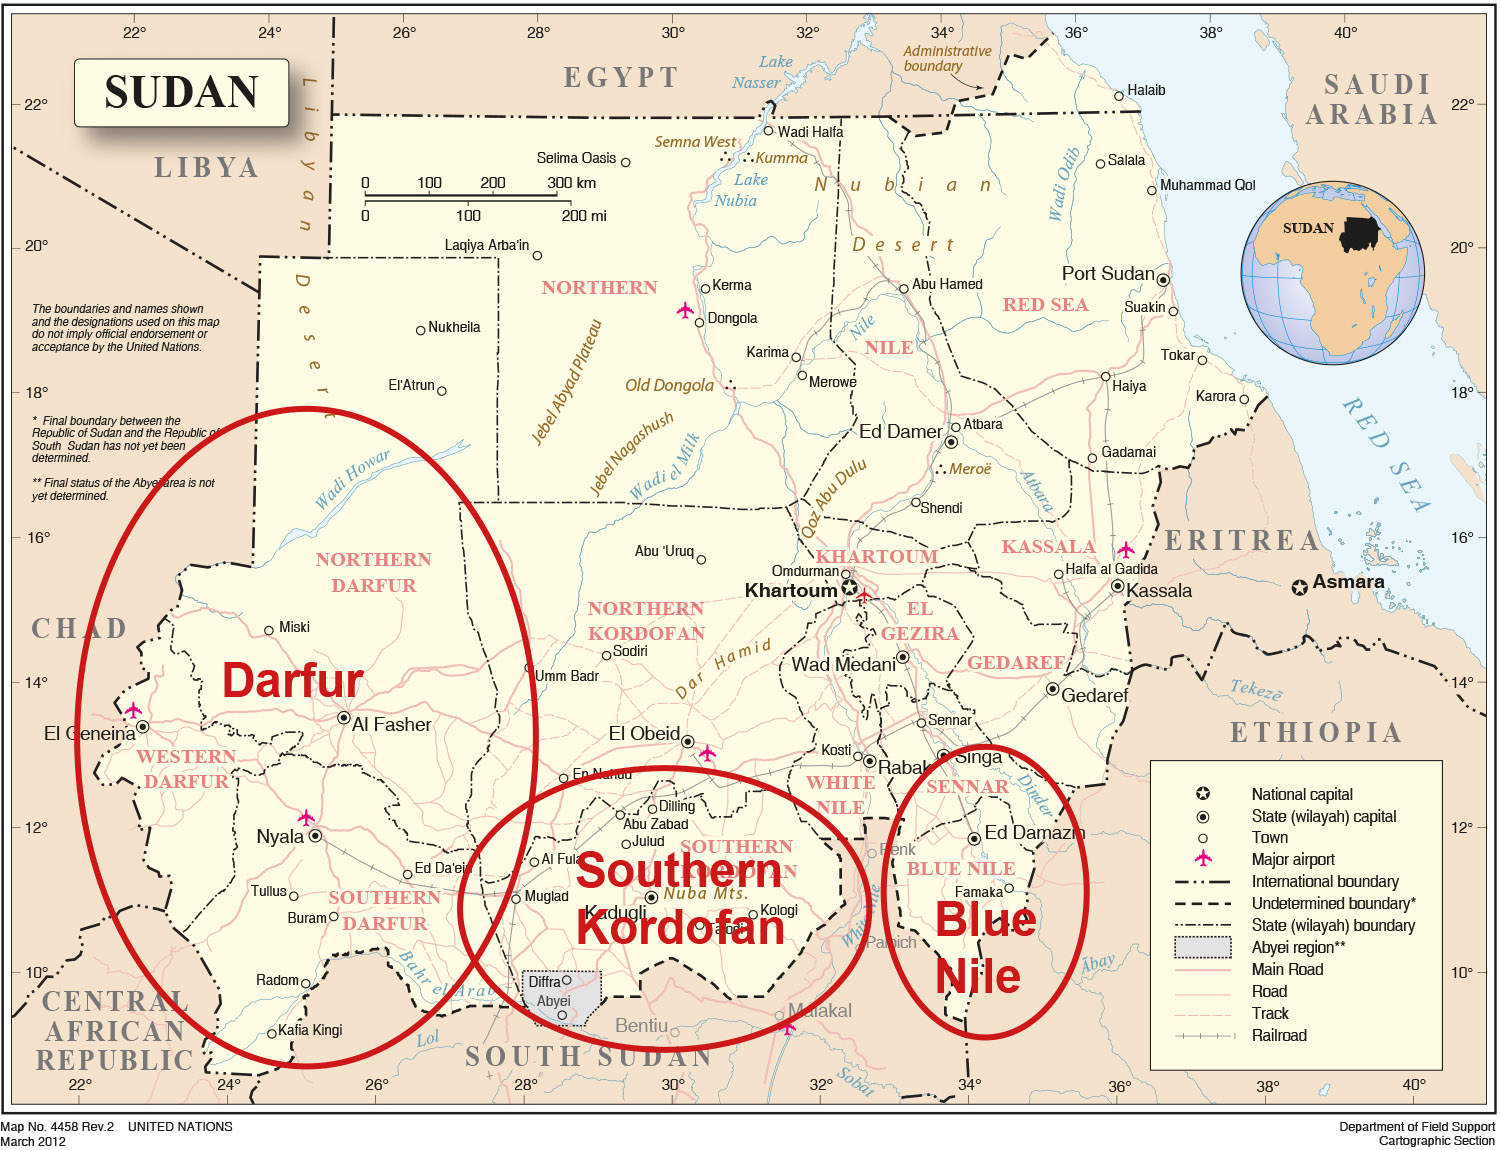 Einsatzbereiche der DEZA im Sudan